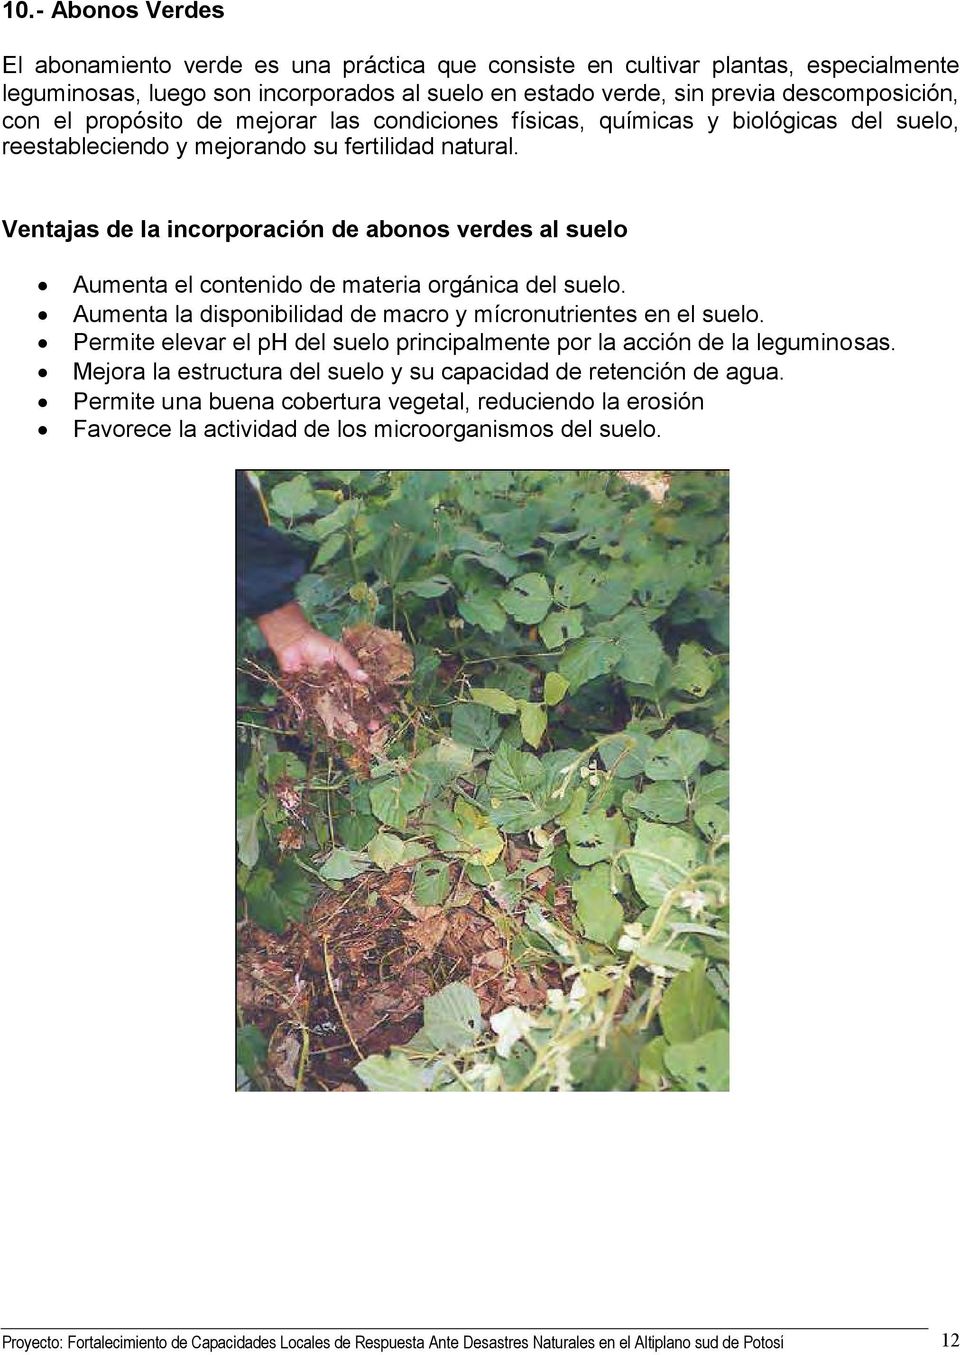 Ventajas de la incorporación de abonos verdes al suelo Aumenta el contenido de materia orgánica del suelo. Aumenta la disponibilidad de macro y mícronutrientes en el suelo.